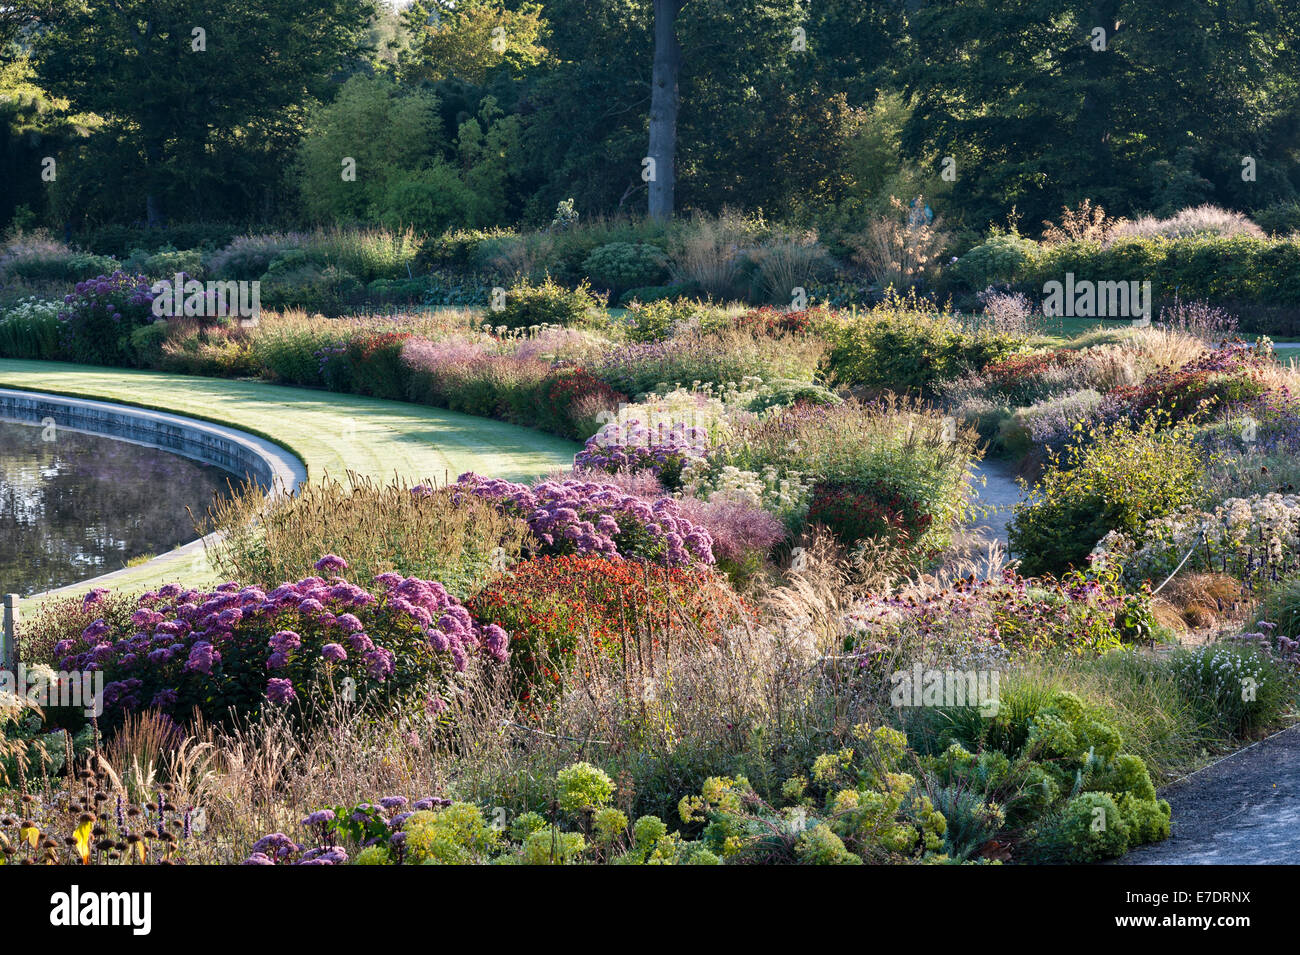 Der Royal Horticultural Society (RHS) Gärten, Wisley, Surrey, UK. Die Grenzen rund um den See bei Sonnenaufgang im September Stockfoto